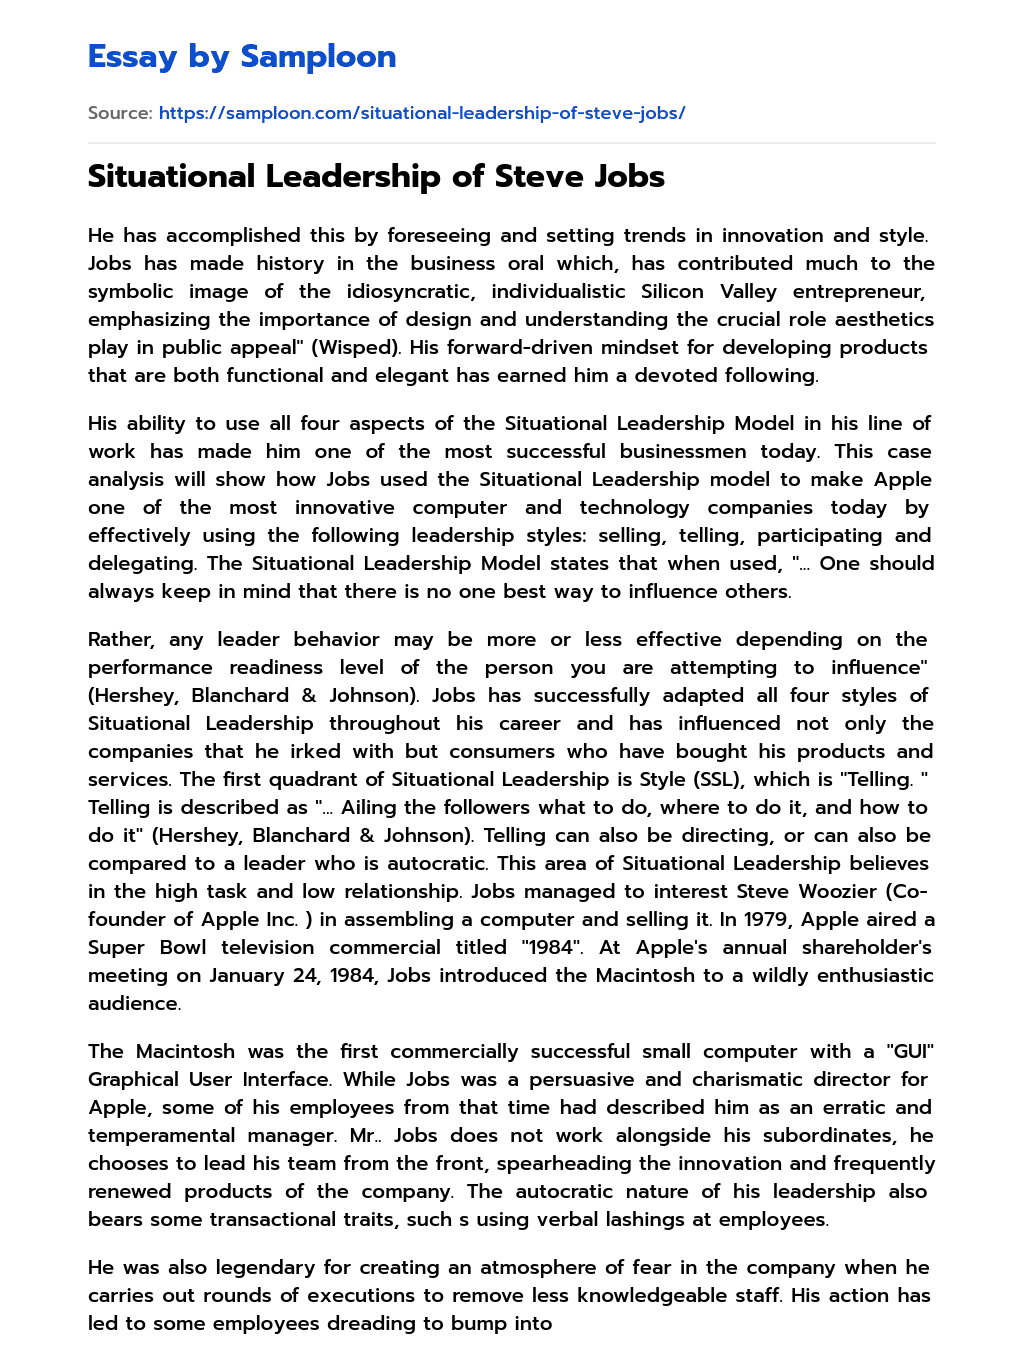 Situational Leadership of Steve Jobs essay